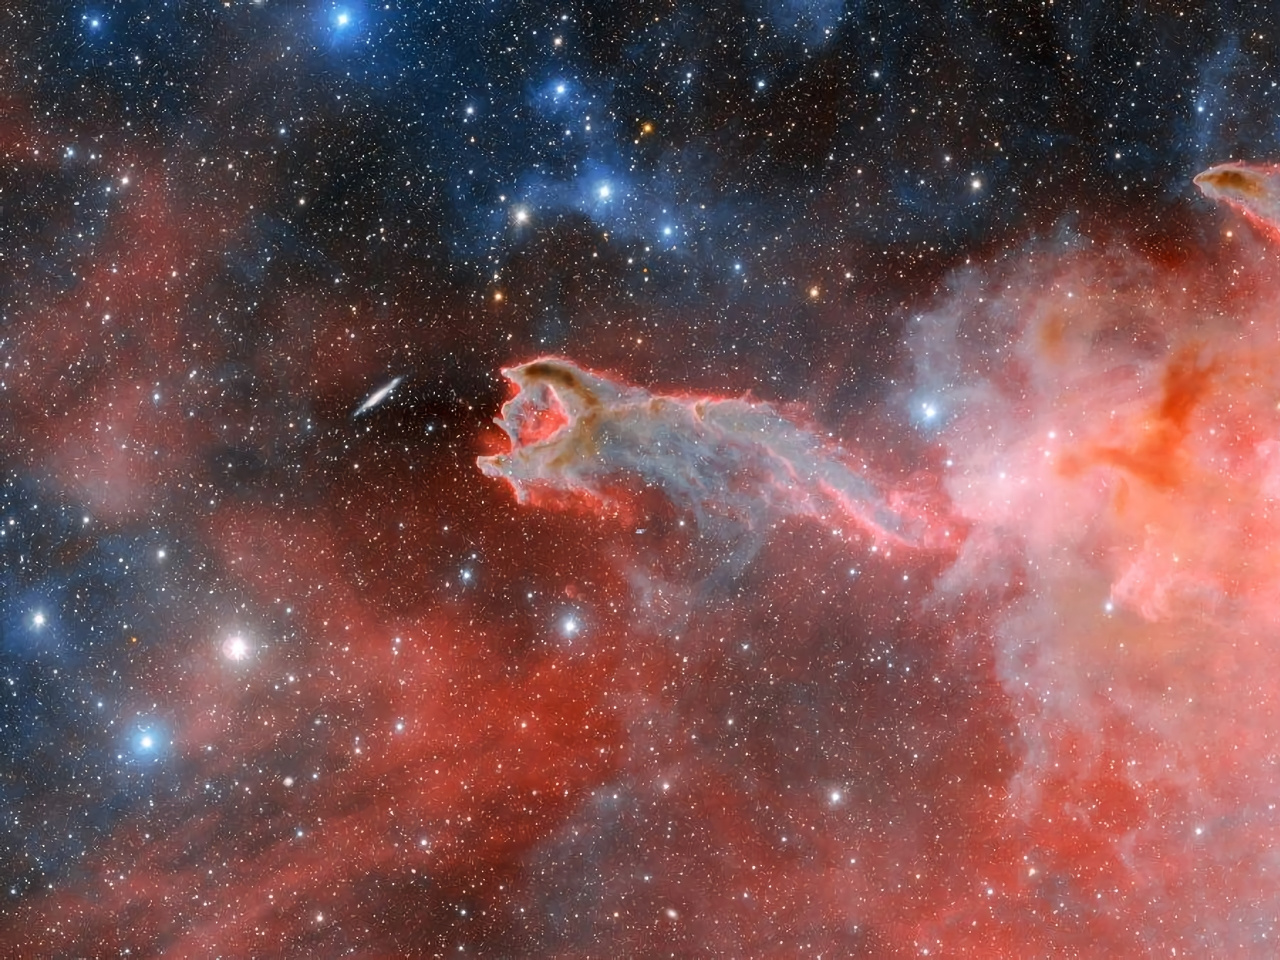 銀河系に浮かぶ「神の手」、暗黒星雲の希少写真撮影